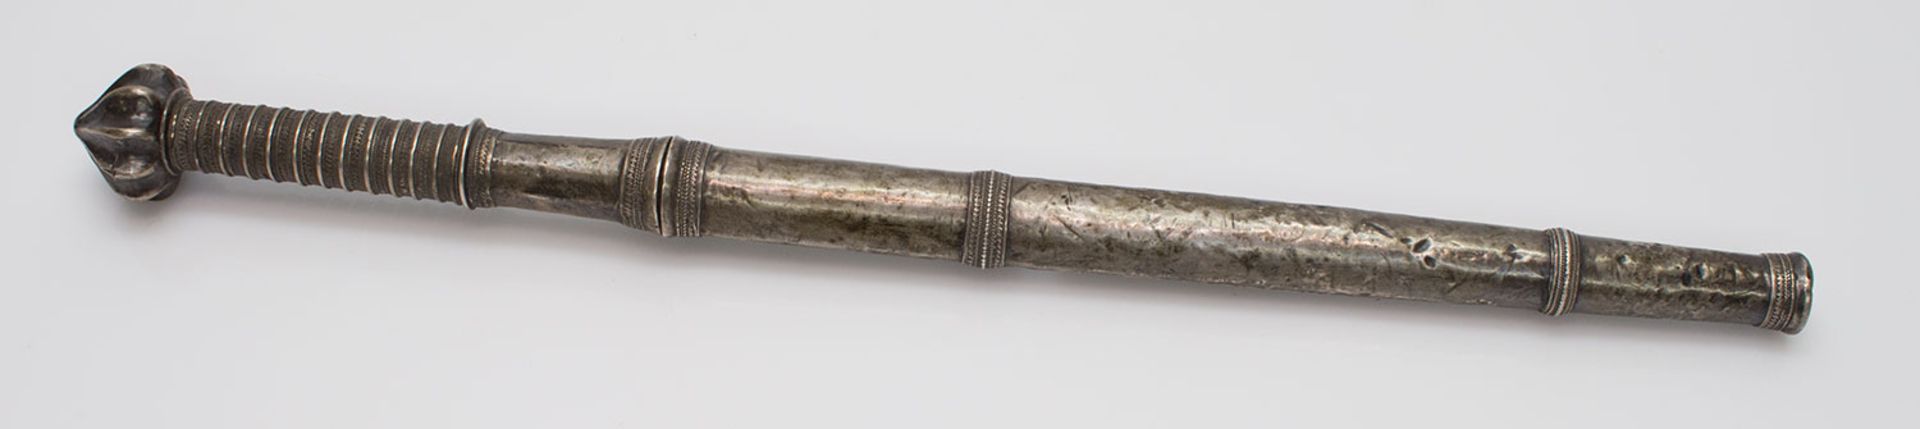 Dha DolchBurma 19. Jh., silbermontierte handgeschmiedete Rückenklinge, in Silberscheide, L. 38,5 cm - Bild 2 aus 2